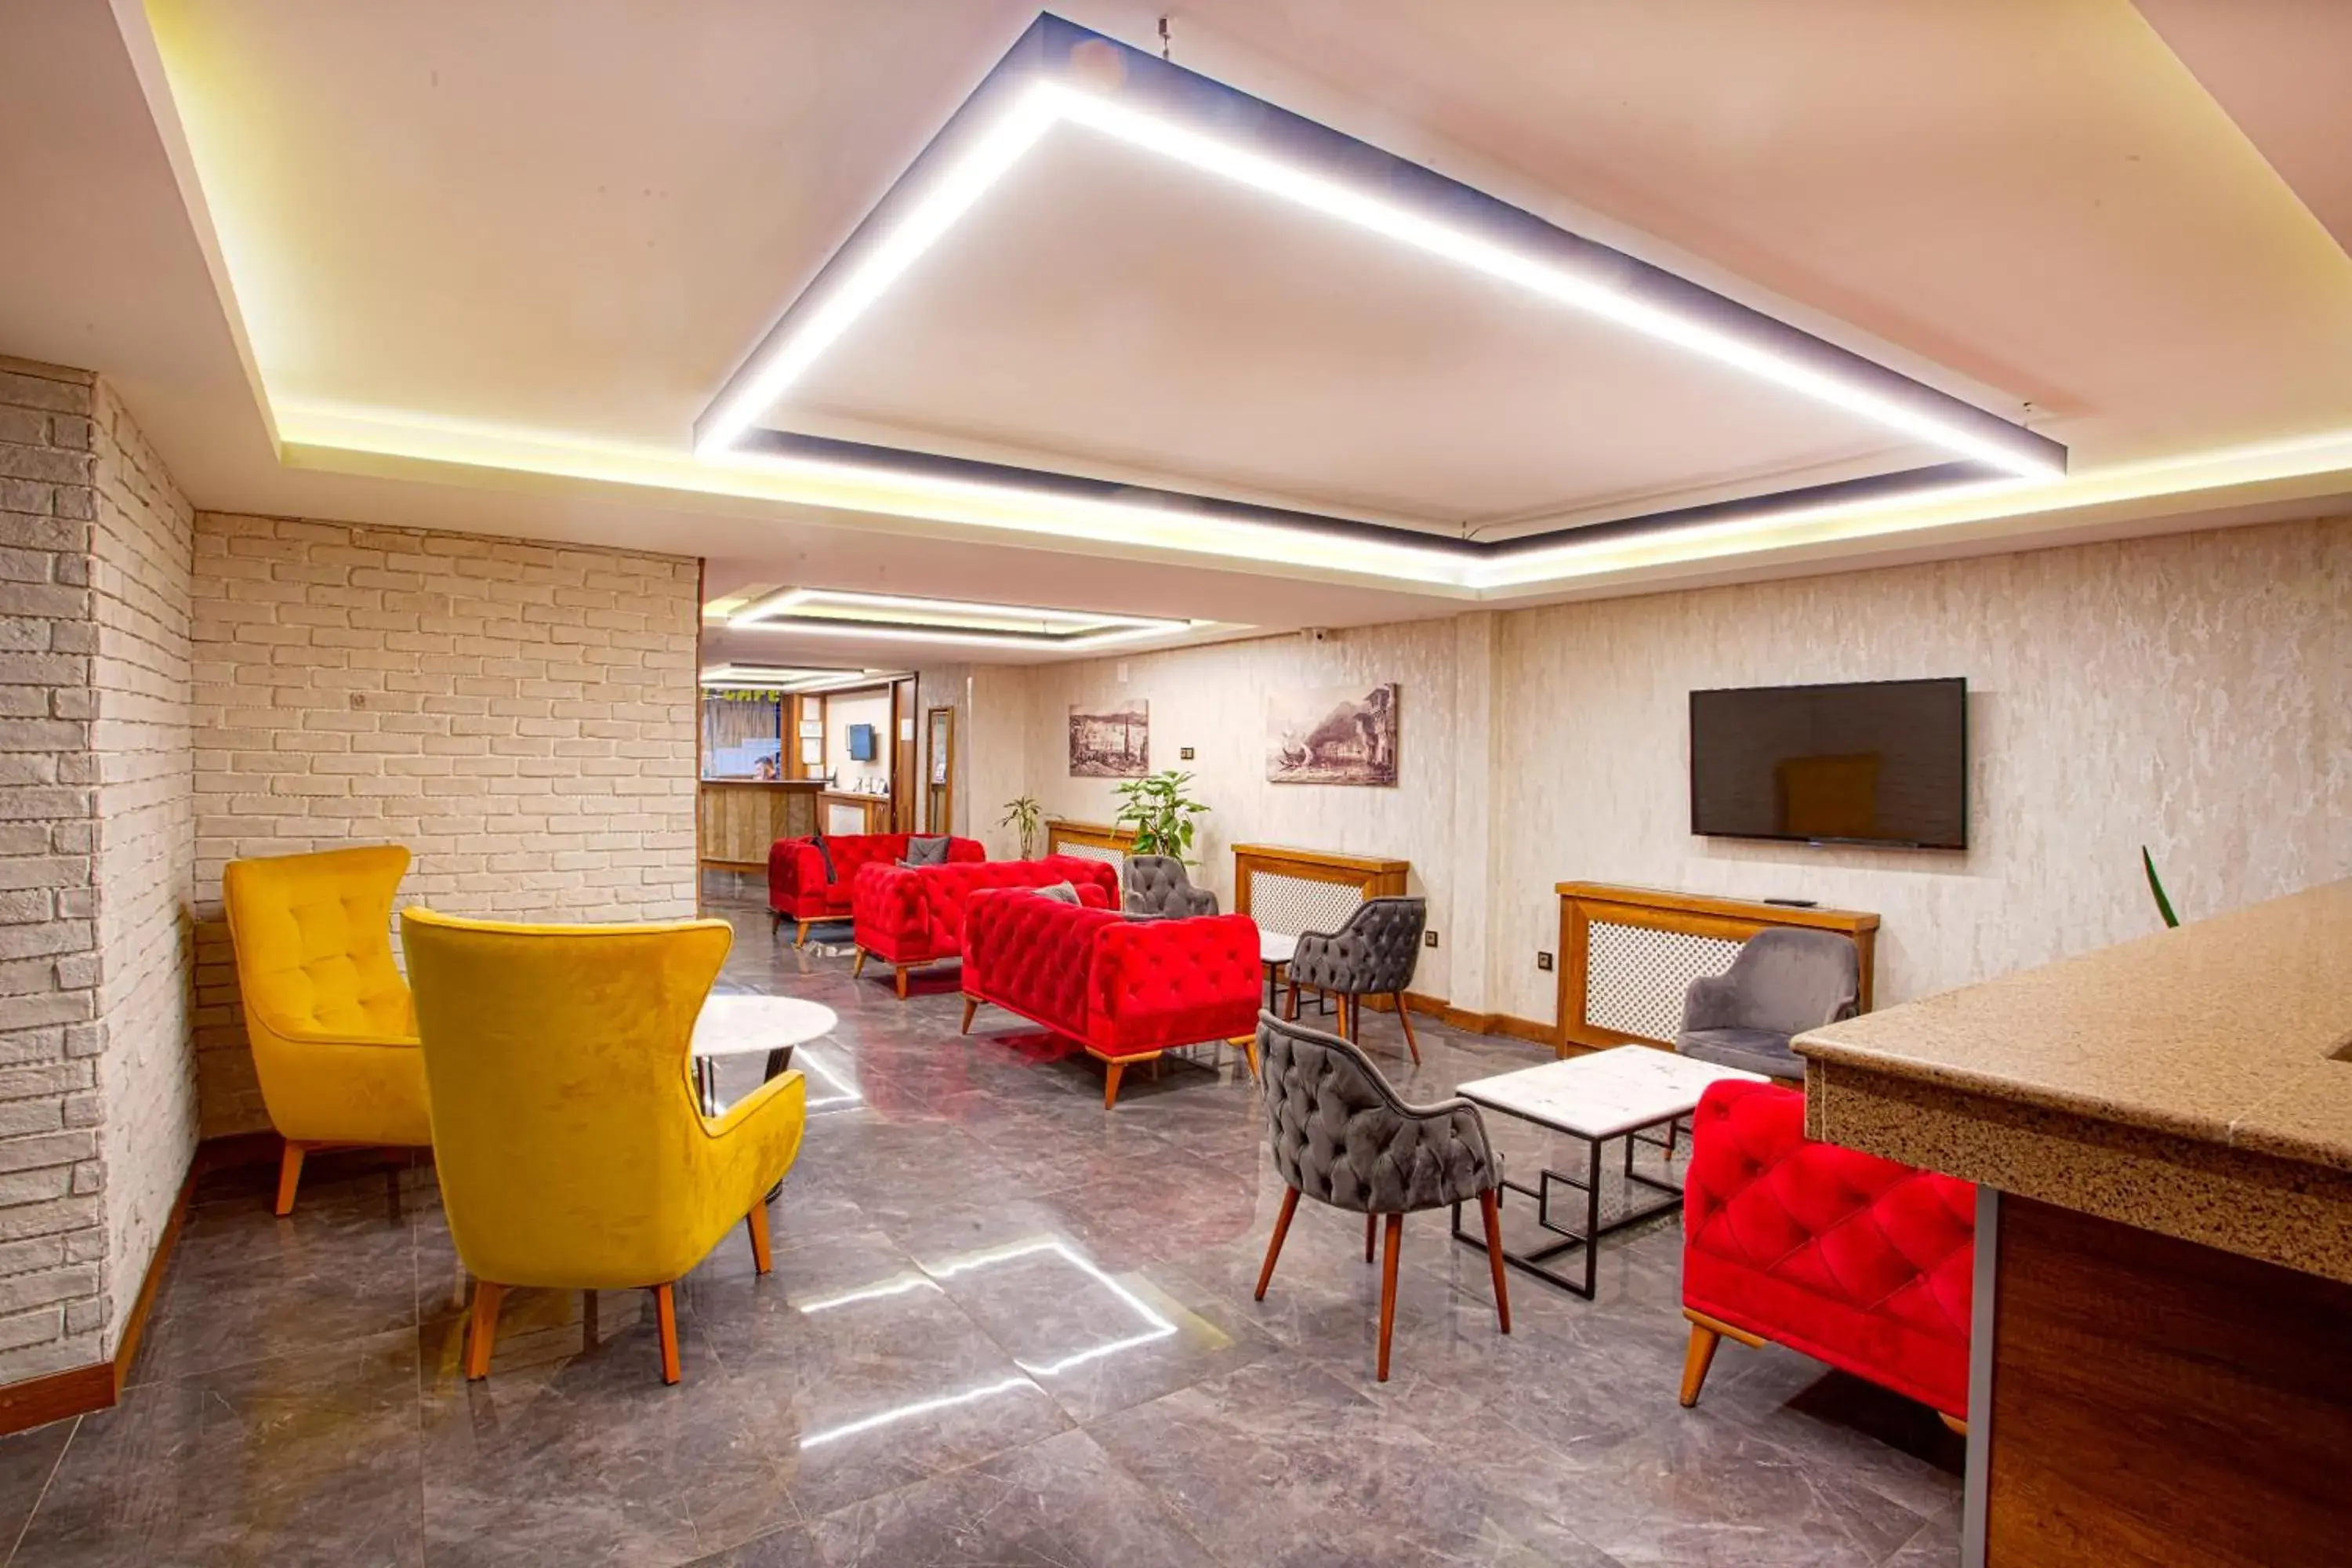 Lobby or reception in Sim Hotel Istanbul